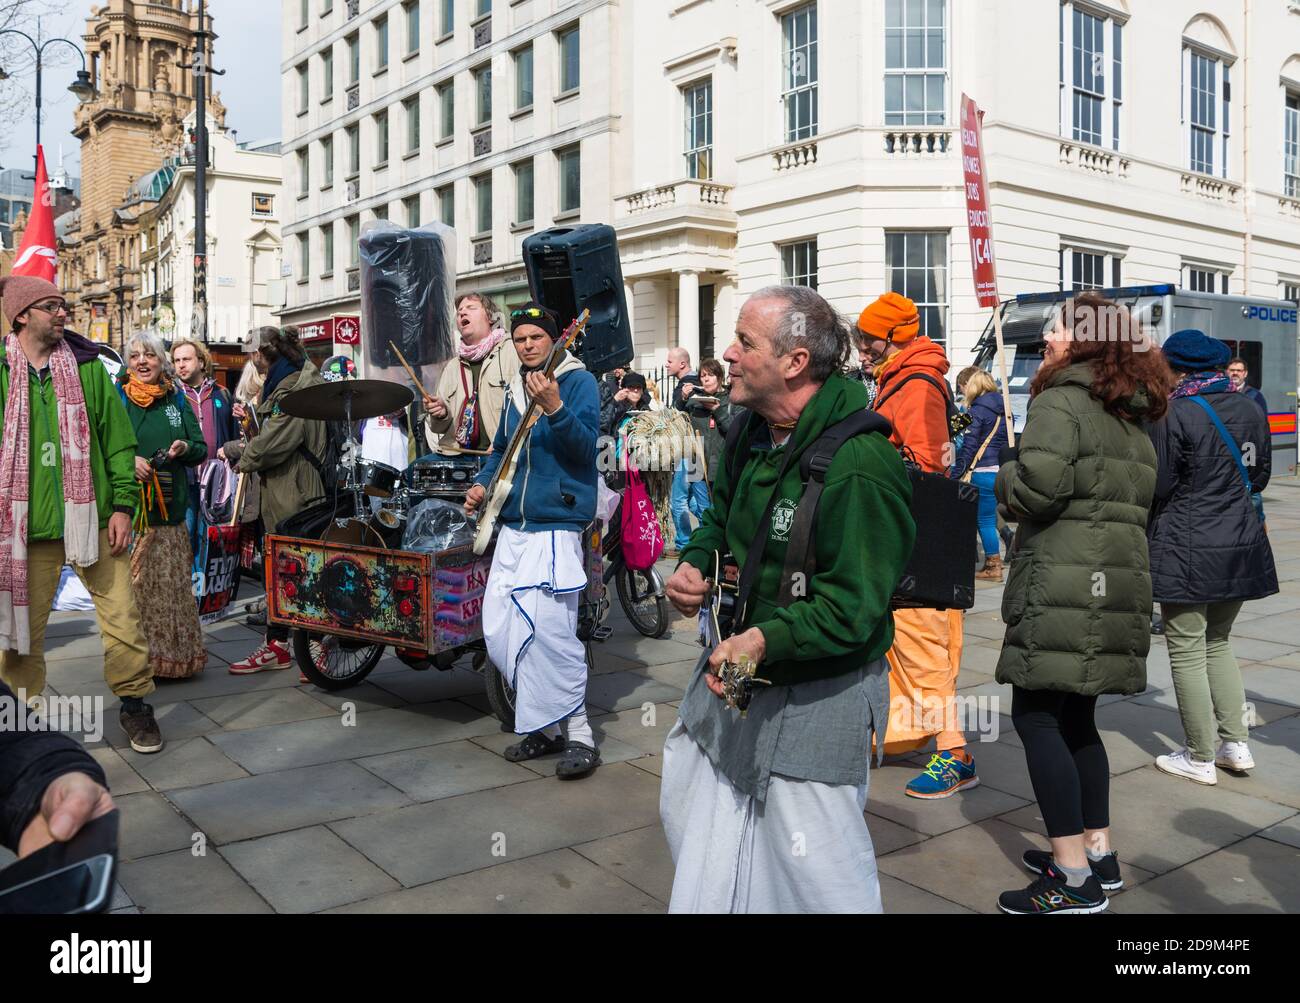 Un groupe de musiciens Hare Krishna divertit des gens à Charing Cross Road lors d'une marche de protestation dans le centre de Londres, en Angleterre, au Royaume-Uni. Banque D'Images